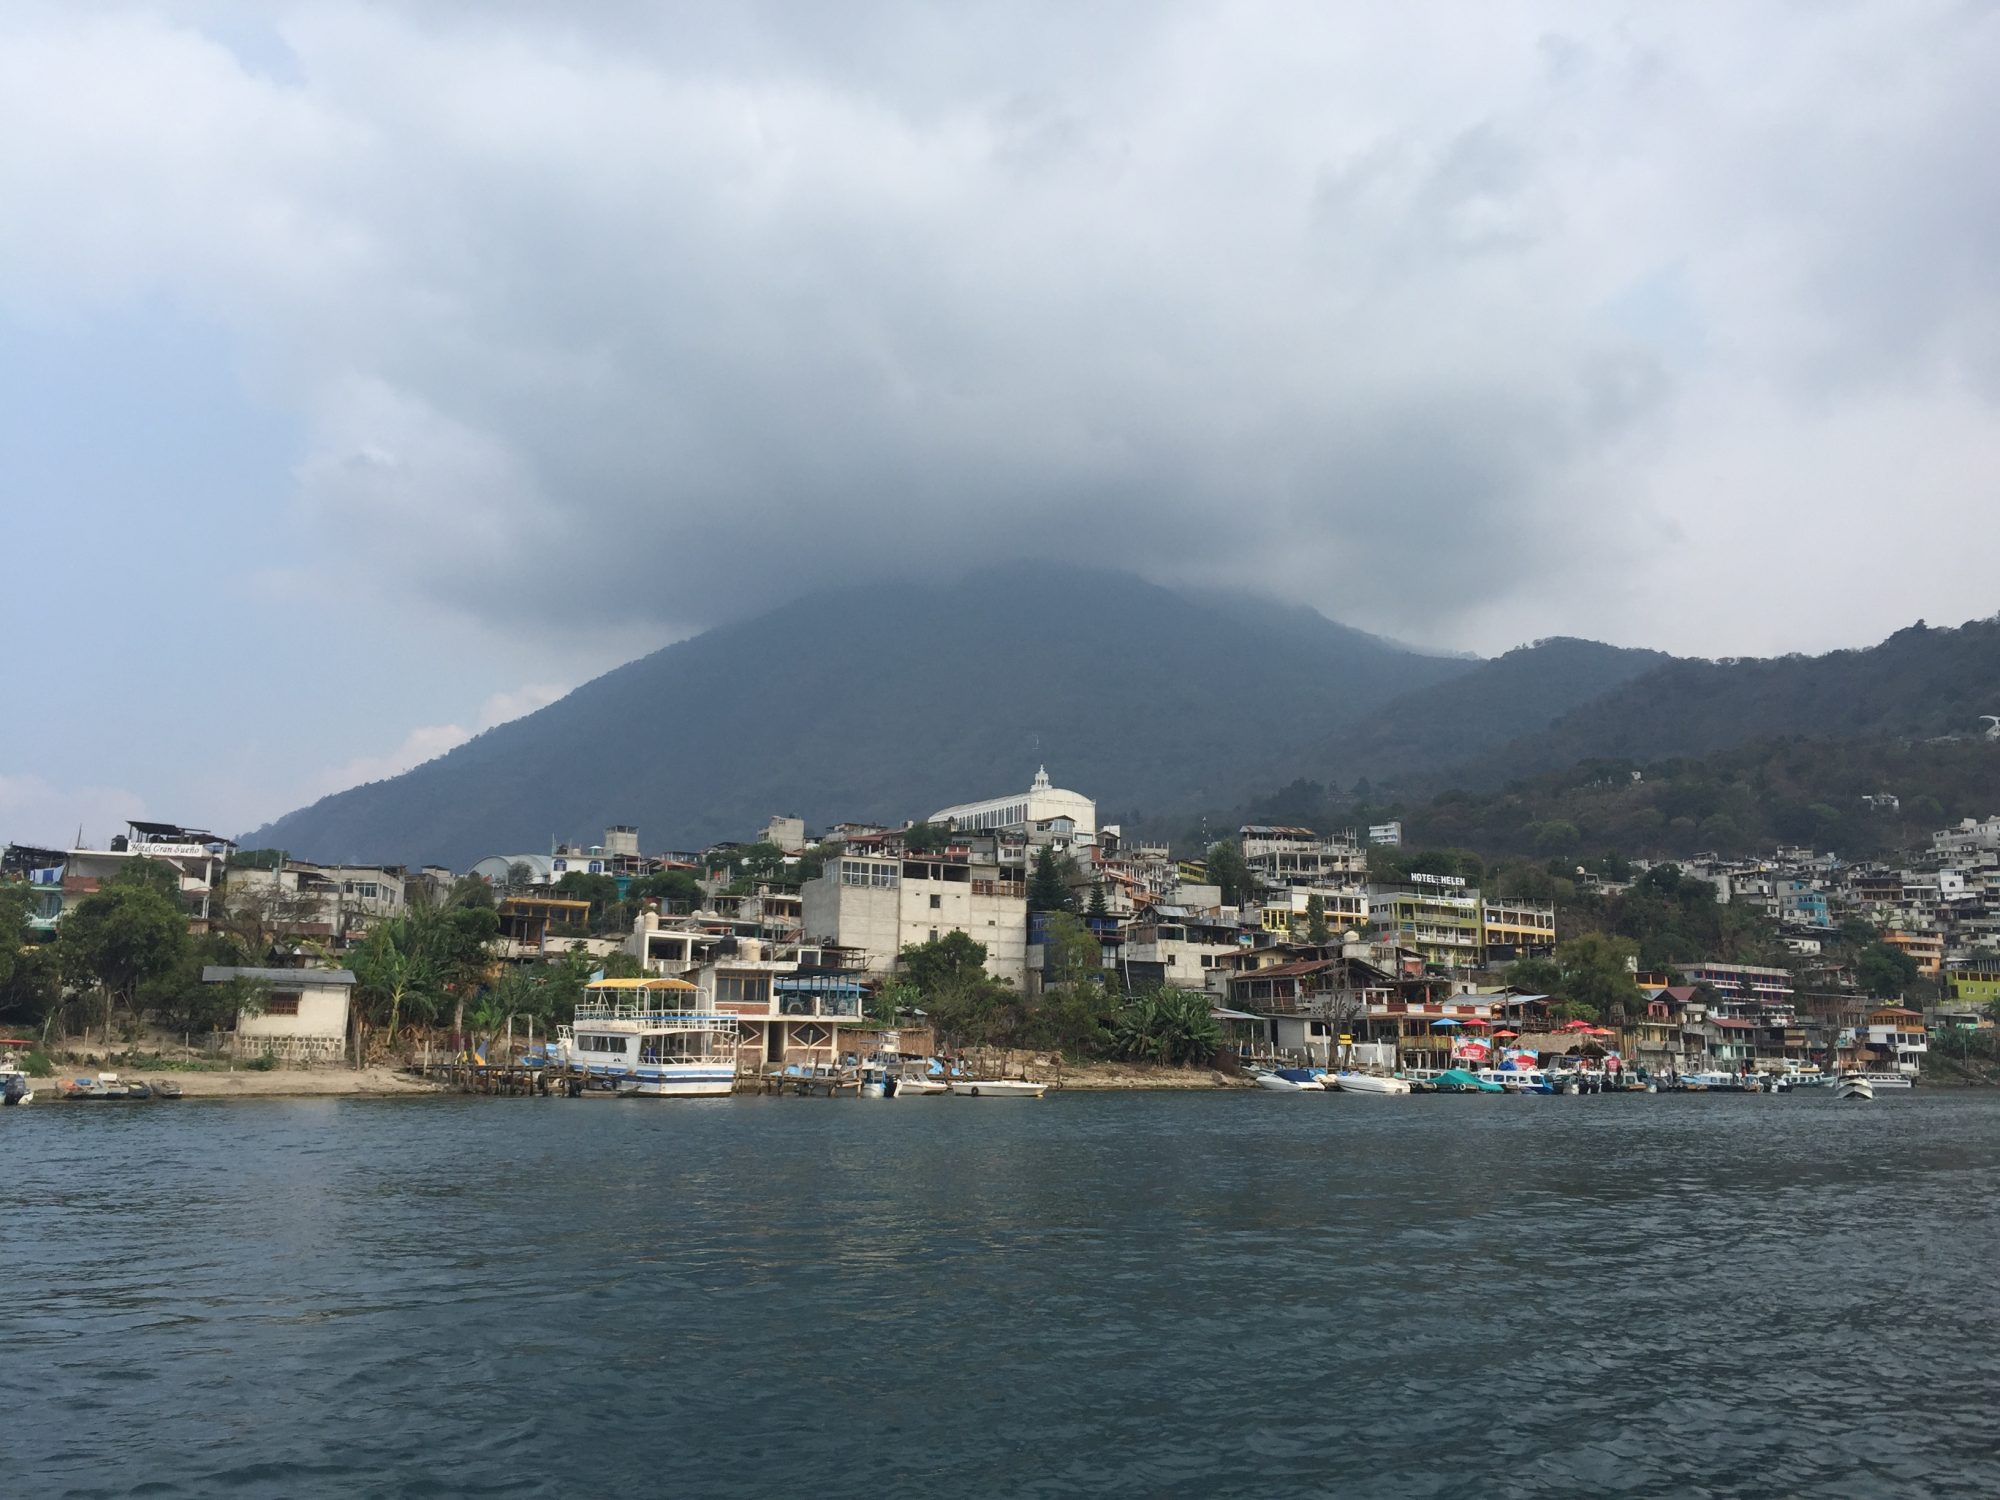 Day 63 – Visiting Lake Atitlan’s Volcanoes (San Pedro)